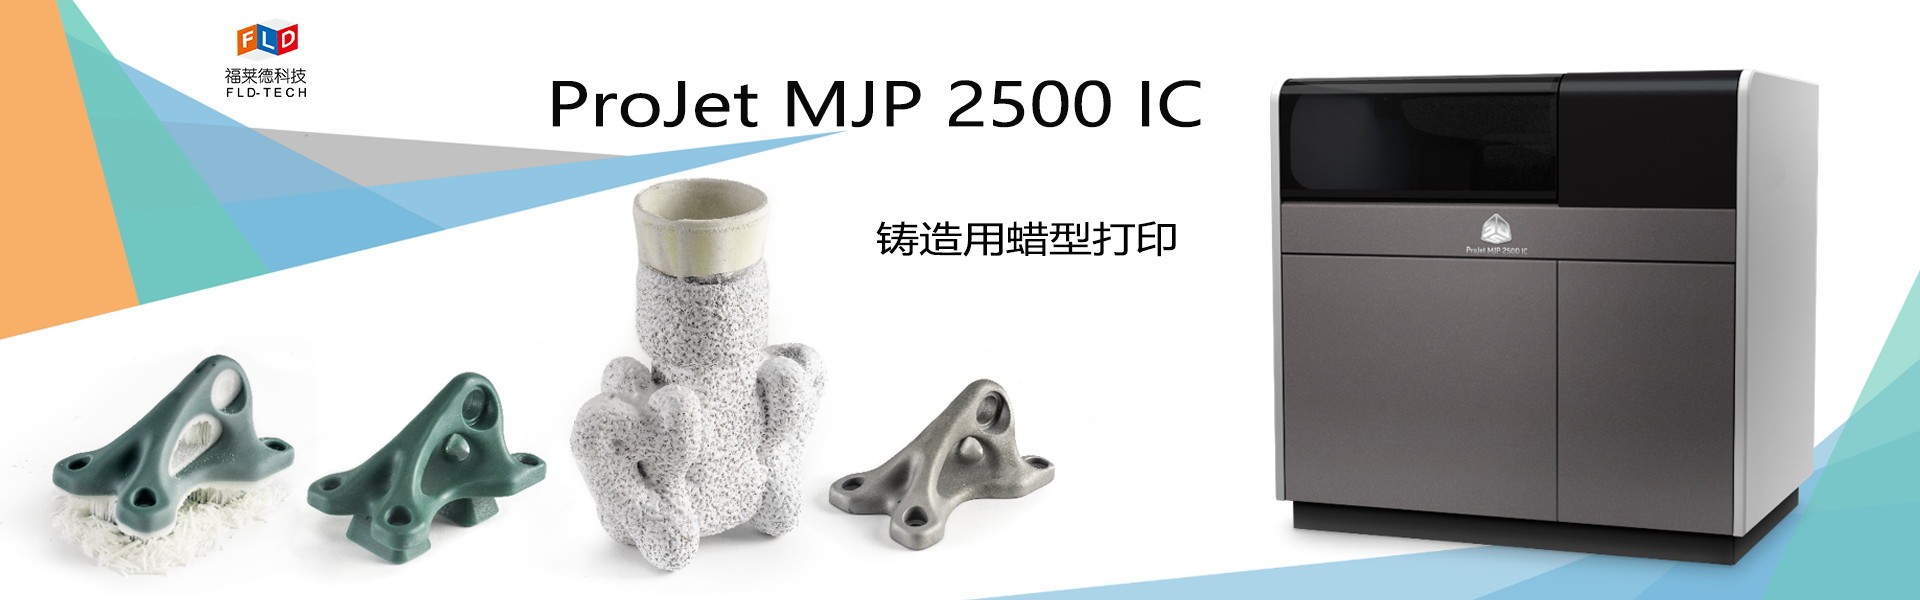  ProJet MJP 2500 IC蜡3D打印机